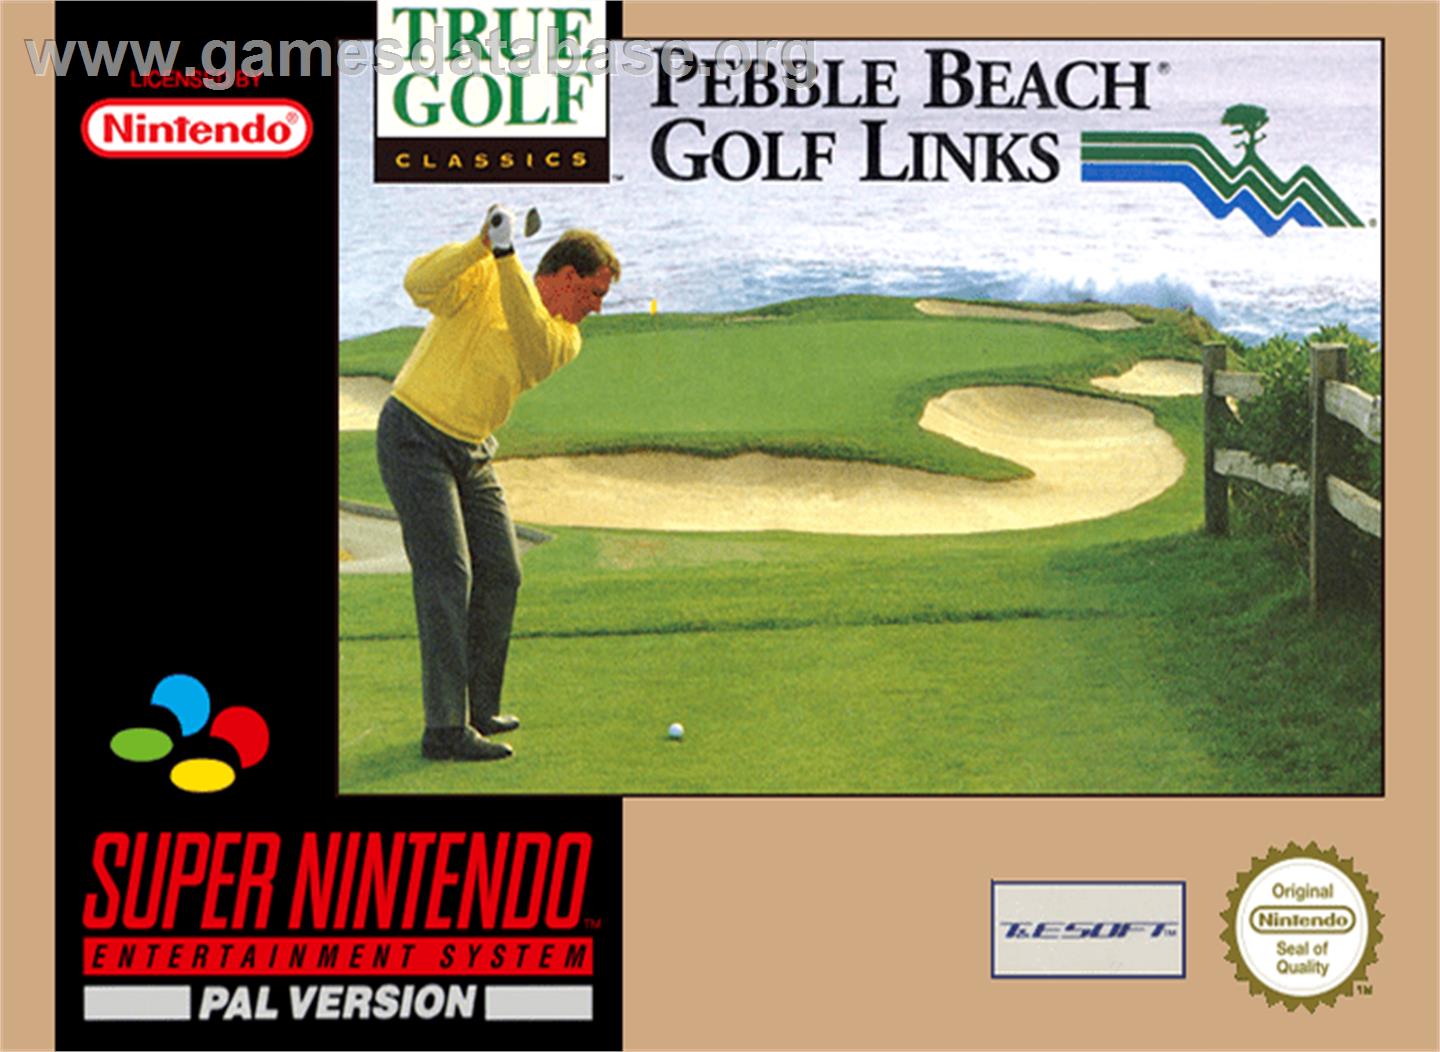 True Golf Classics: Pebble Beach Golf Links - Nintendo SNES - Artwork - Box